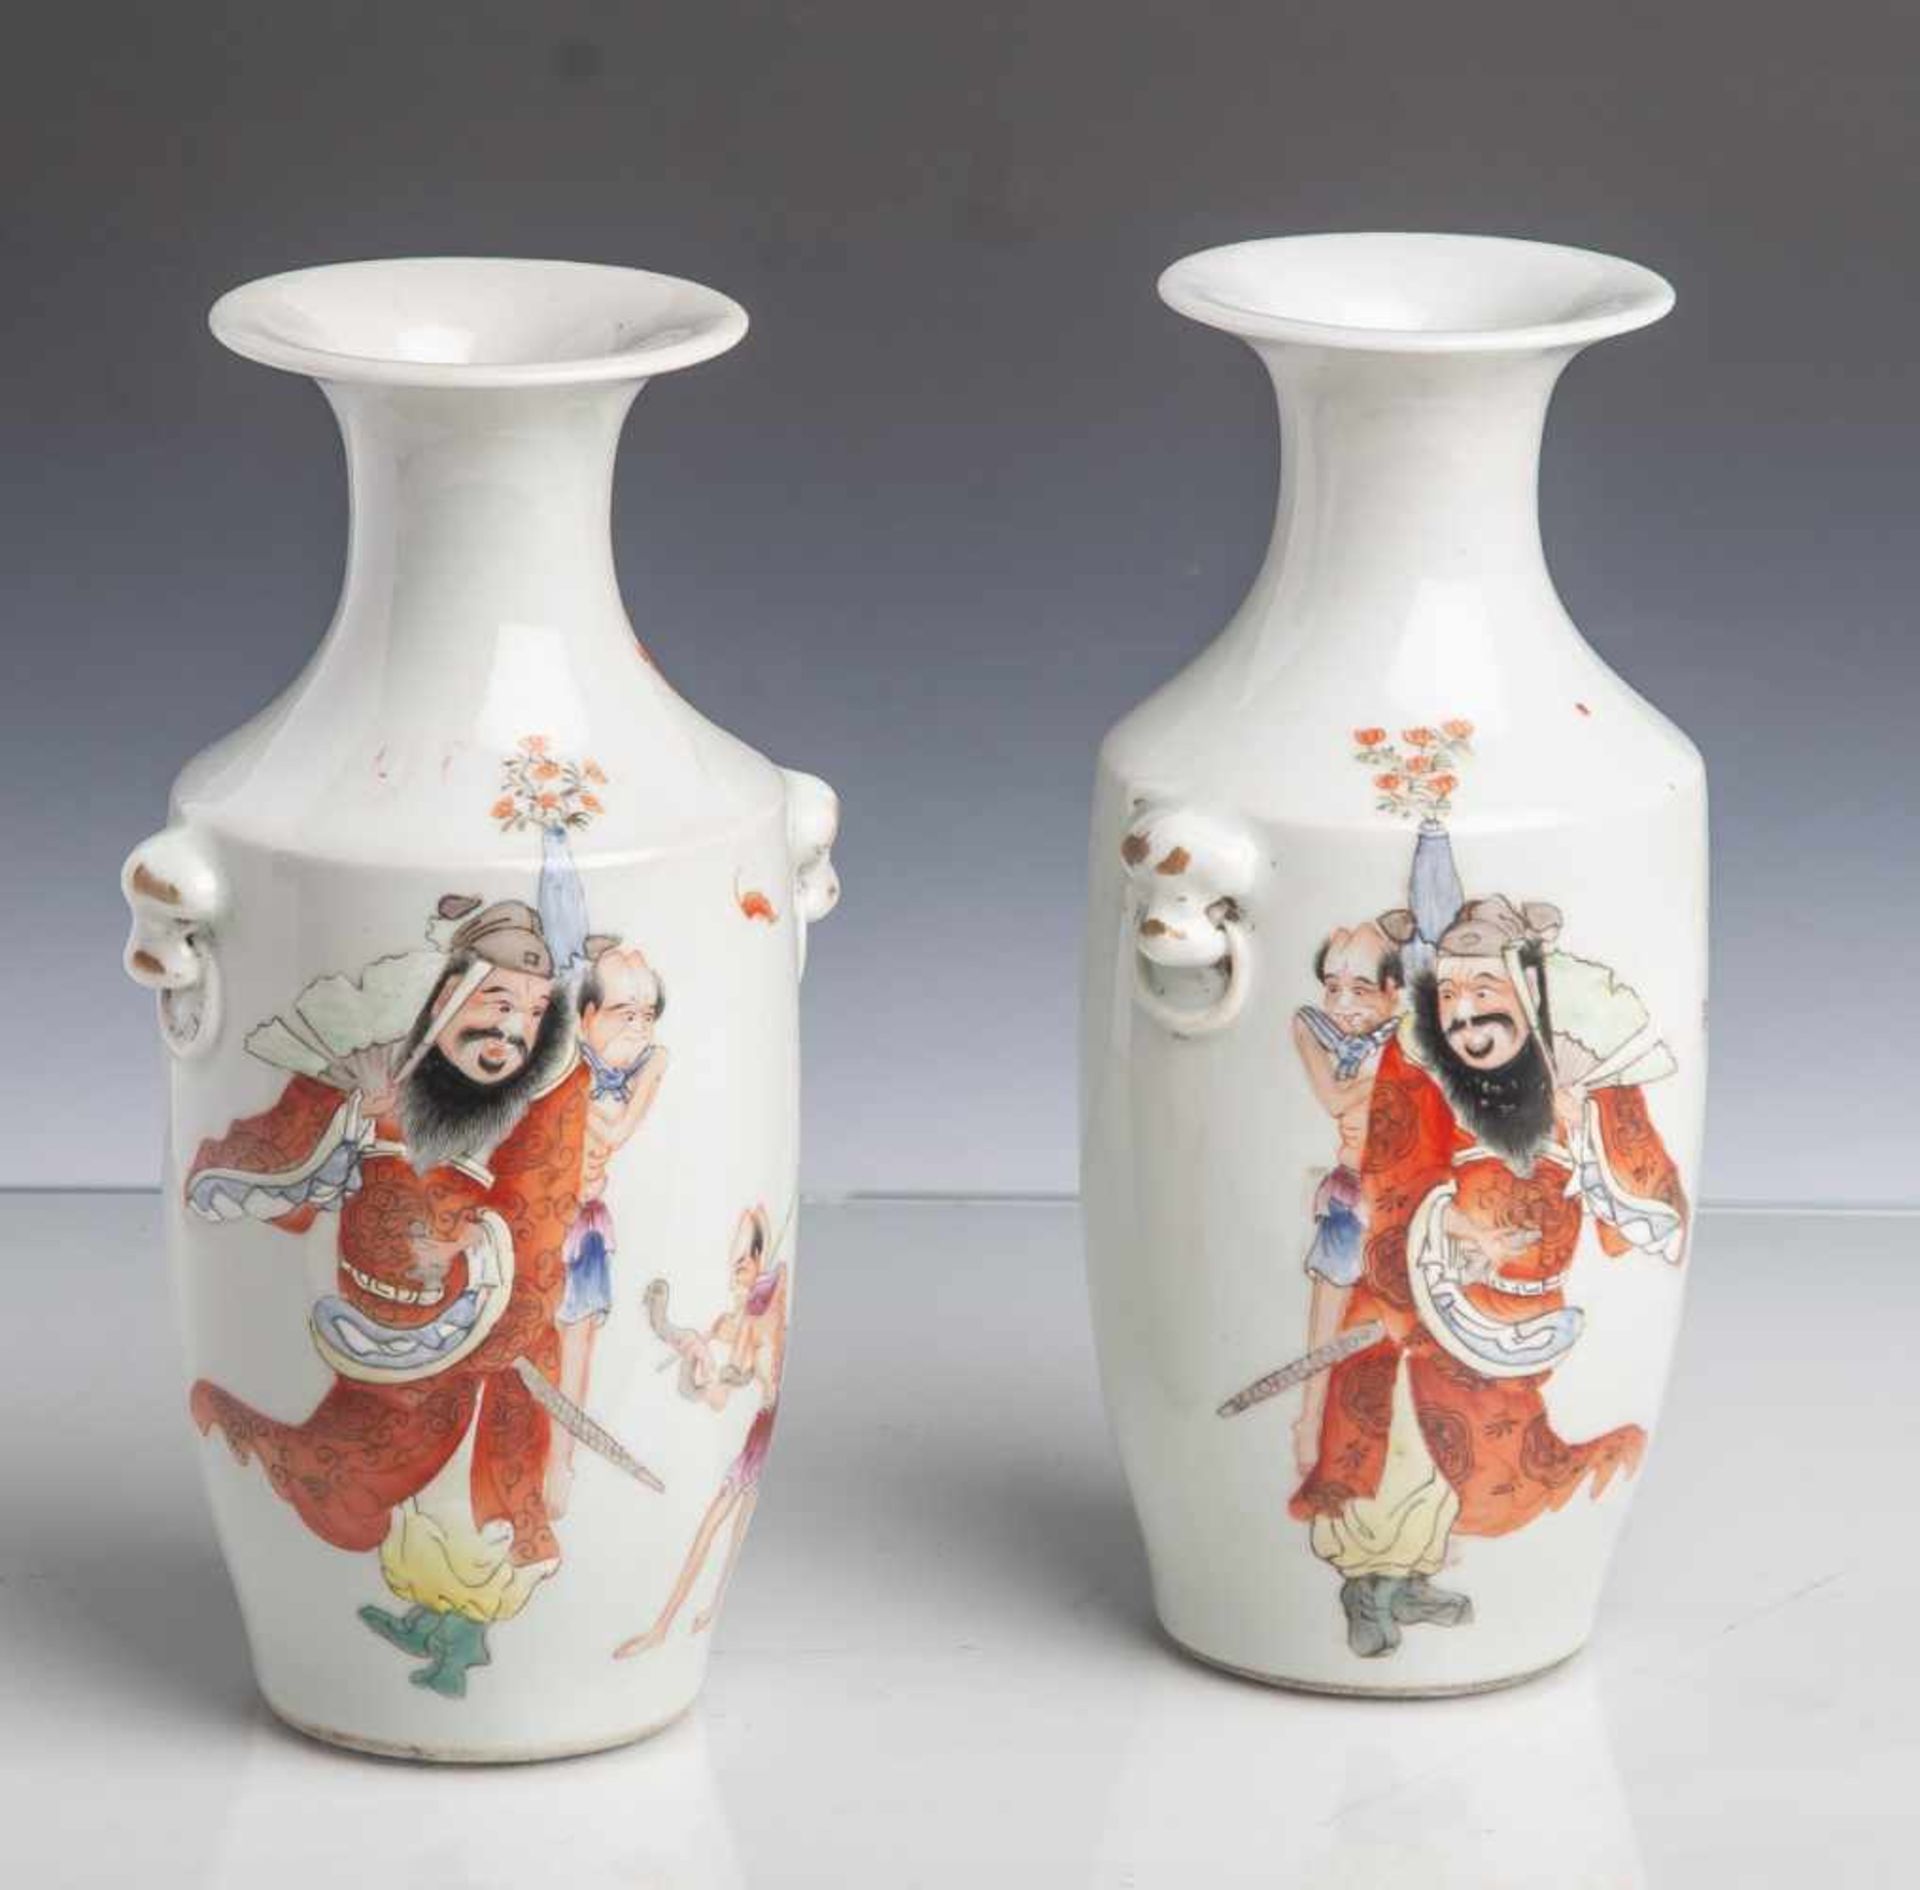 Vasenpaar, China, 19./20. Jahrhundert, Zeit der Republik, Porzellan, hellgrau glasiert,mit